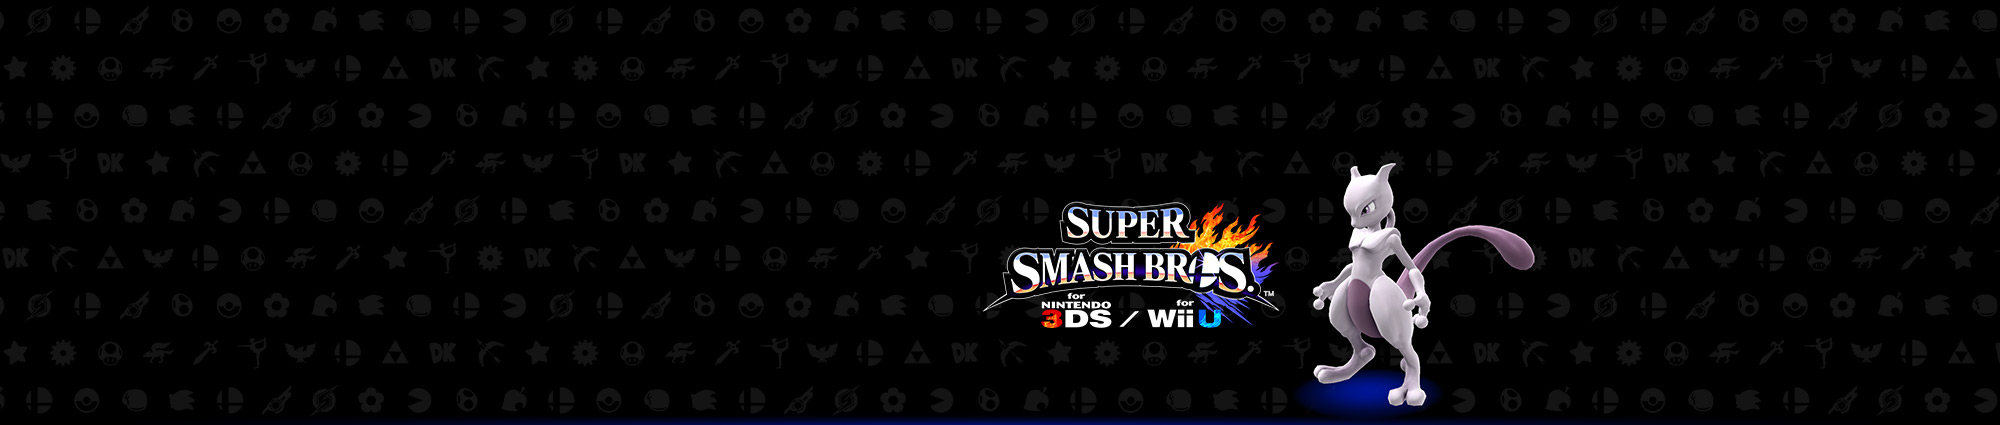 Super Smash Bros. Club Nintendo-Aktion